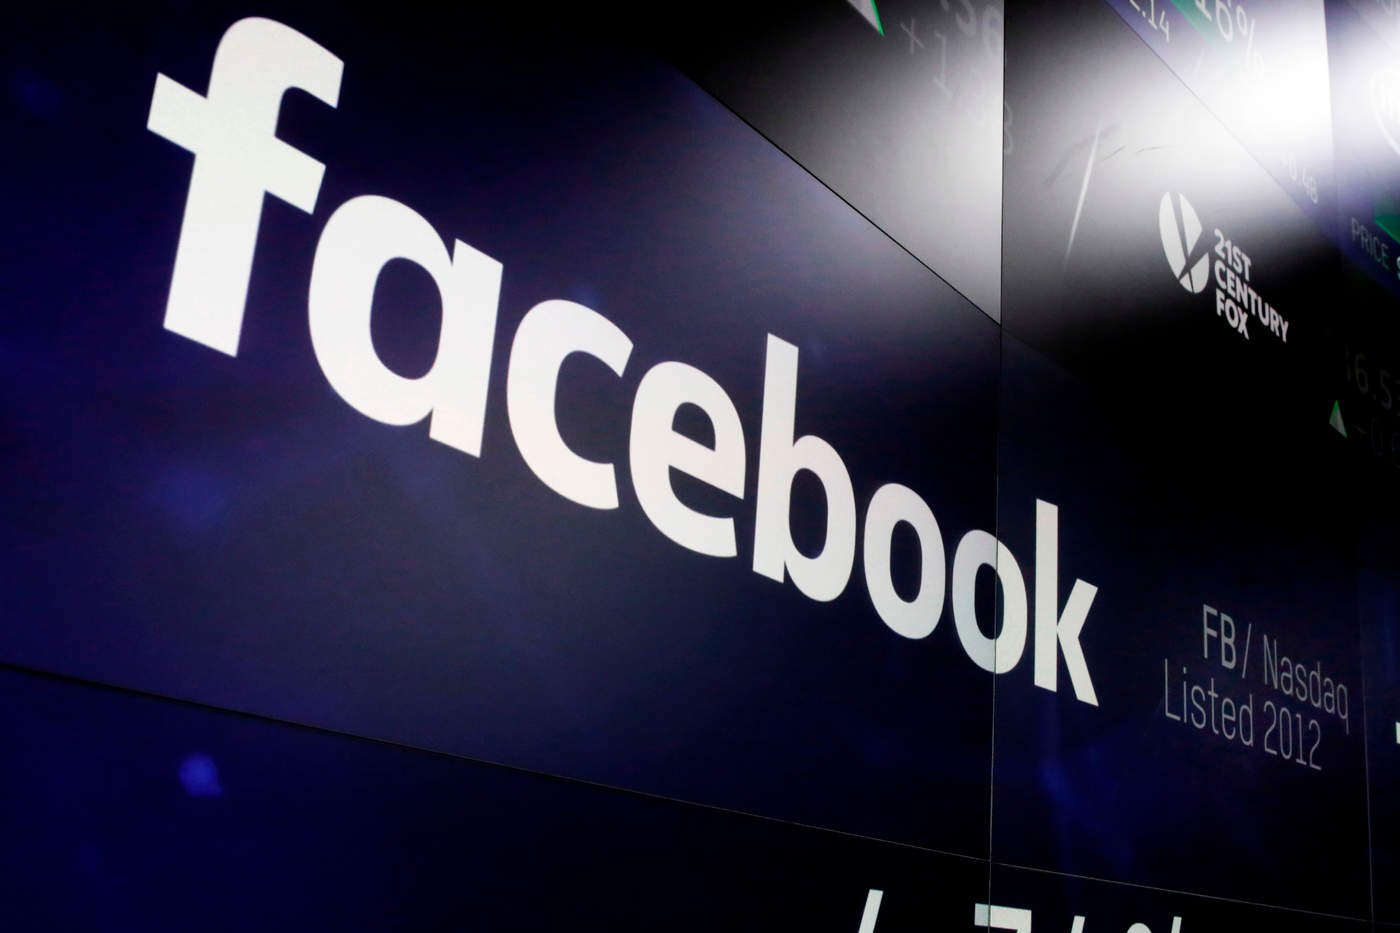 Facebook lanza nueva función para compartir eventos